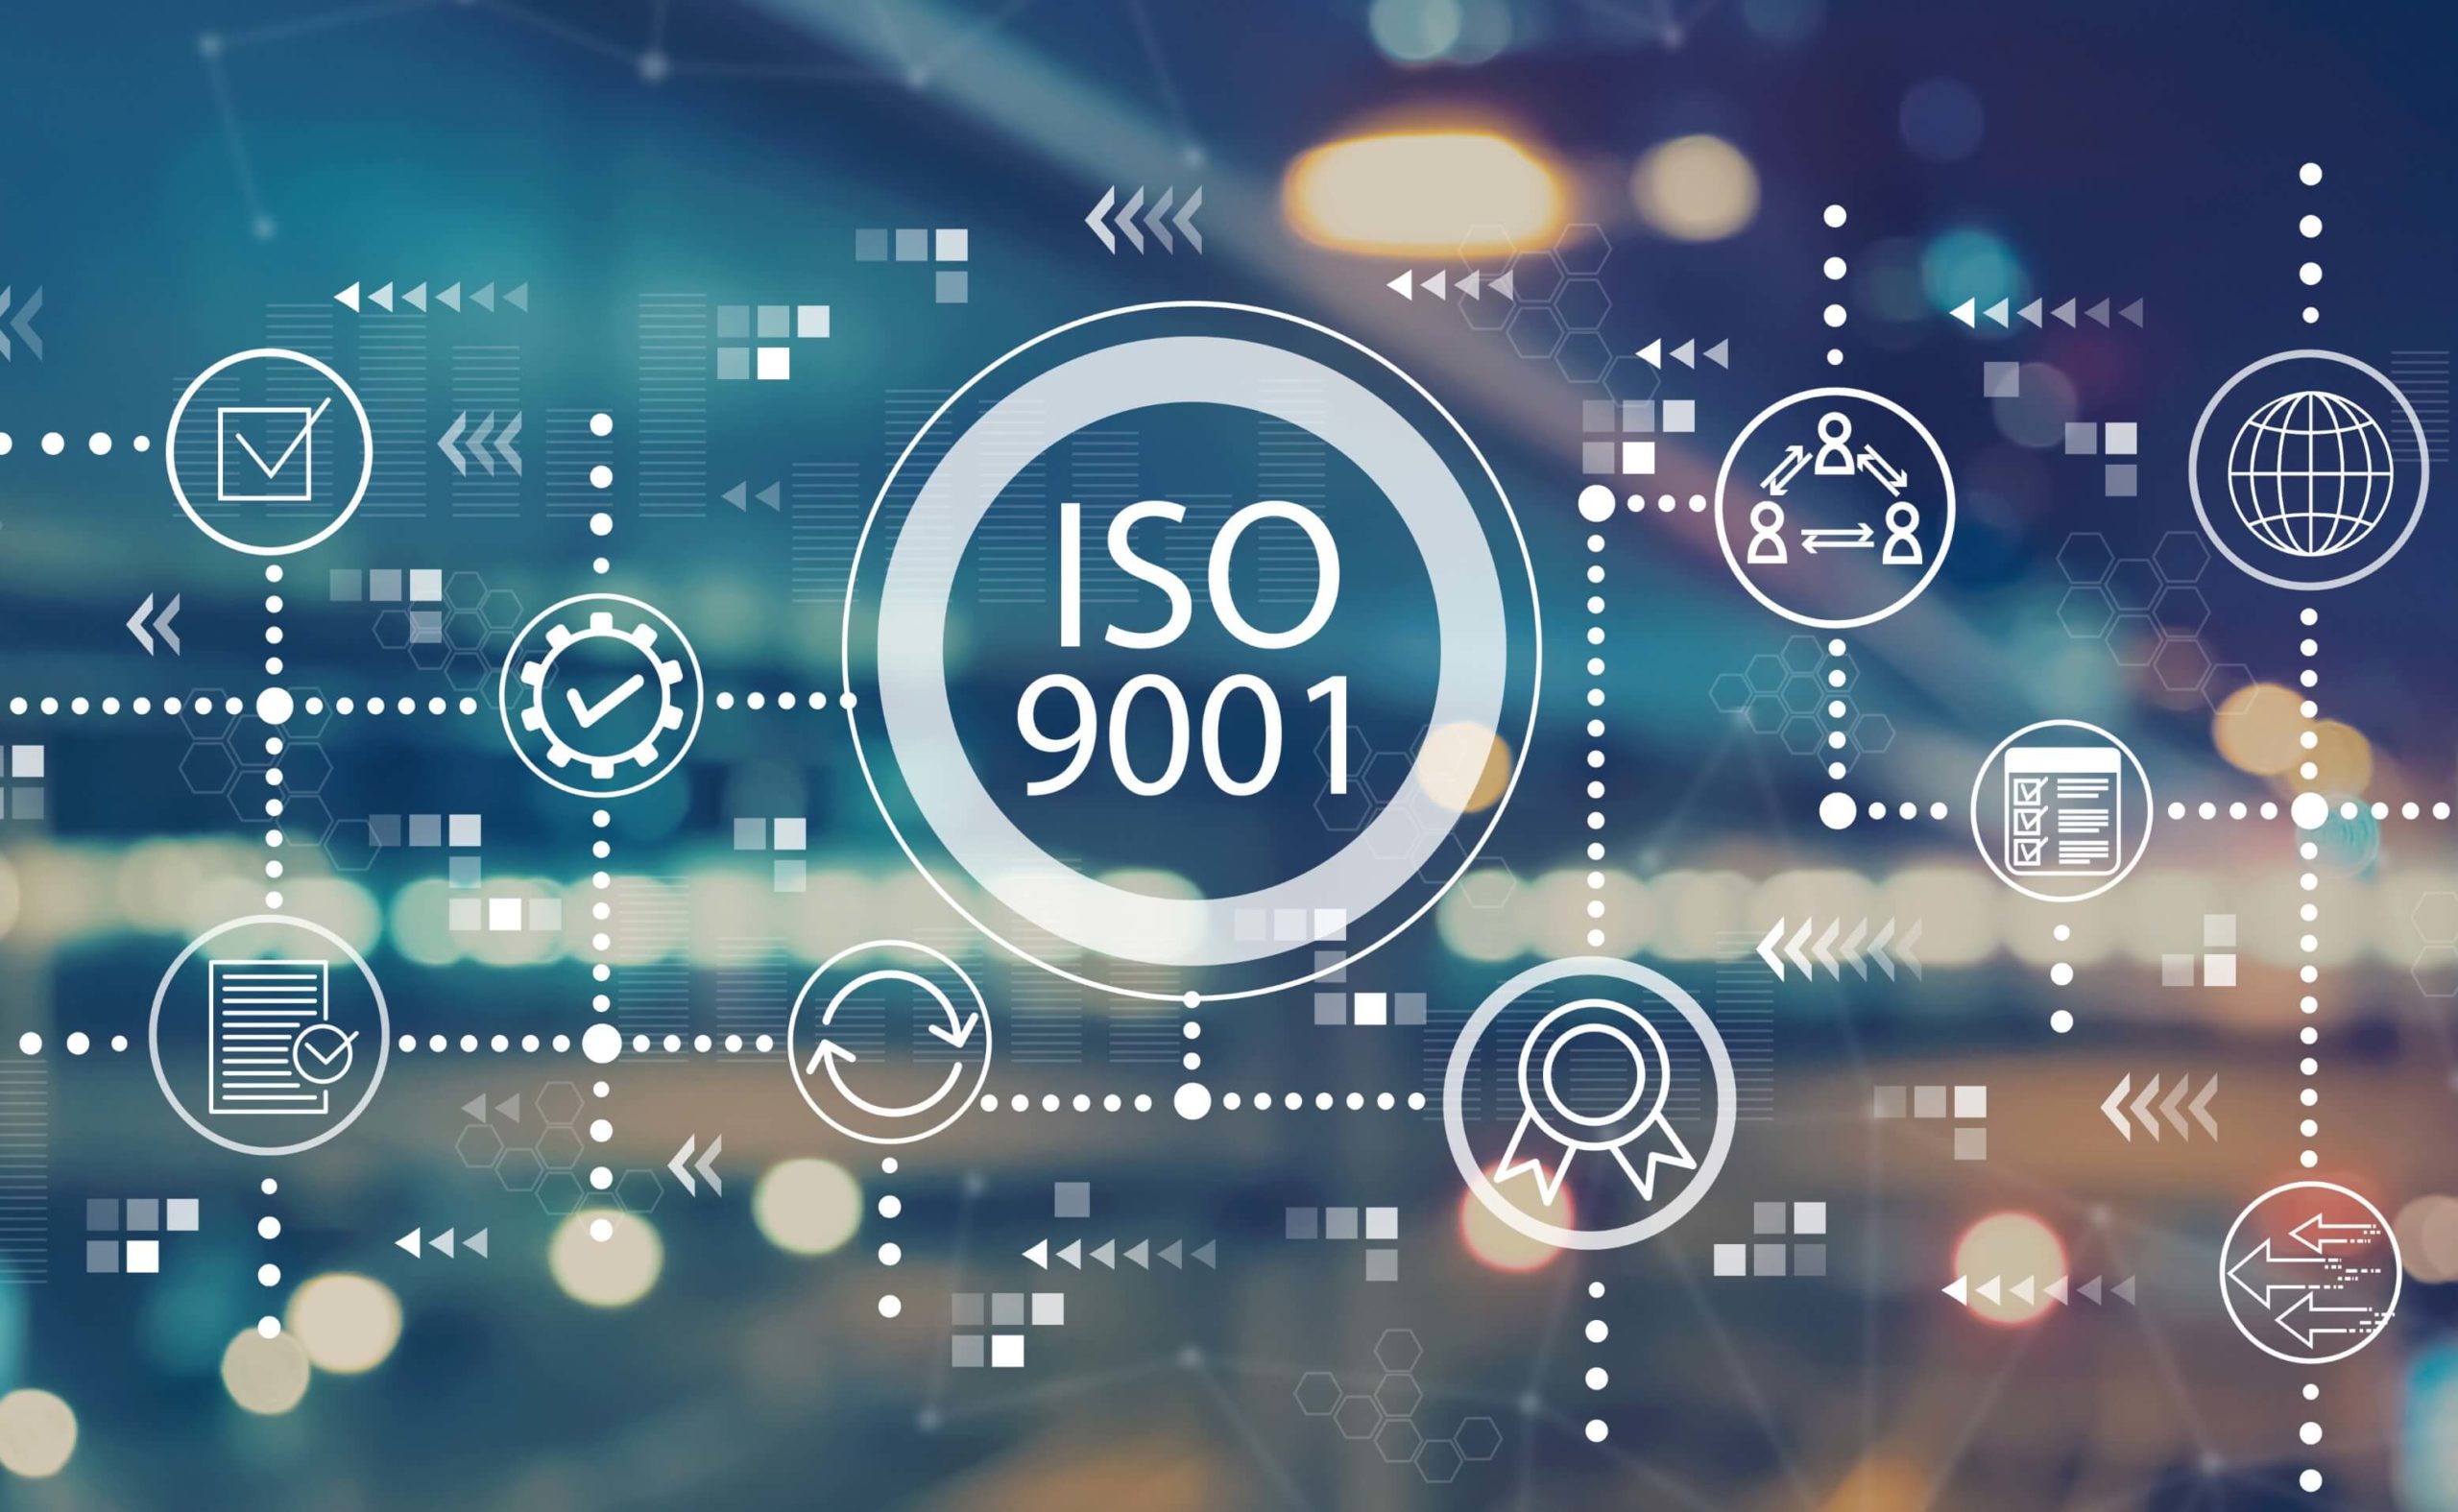 Podnikáte? Prečo by vás mal zaujímať certifikát ISO 9001?